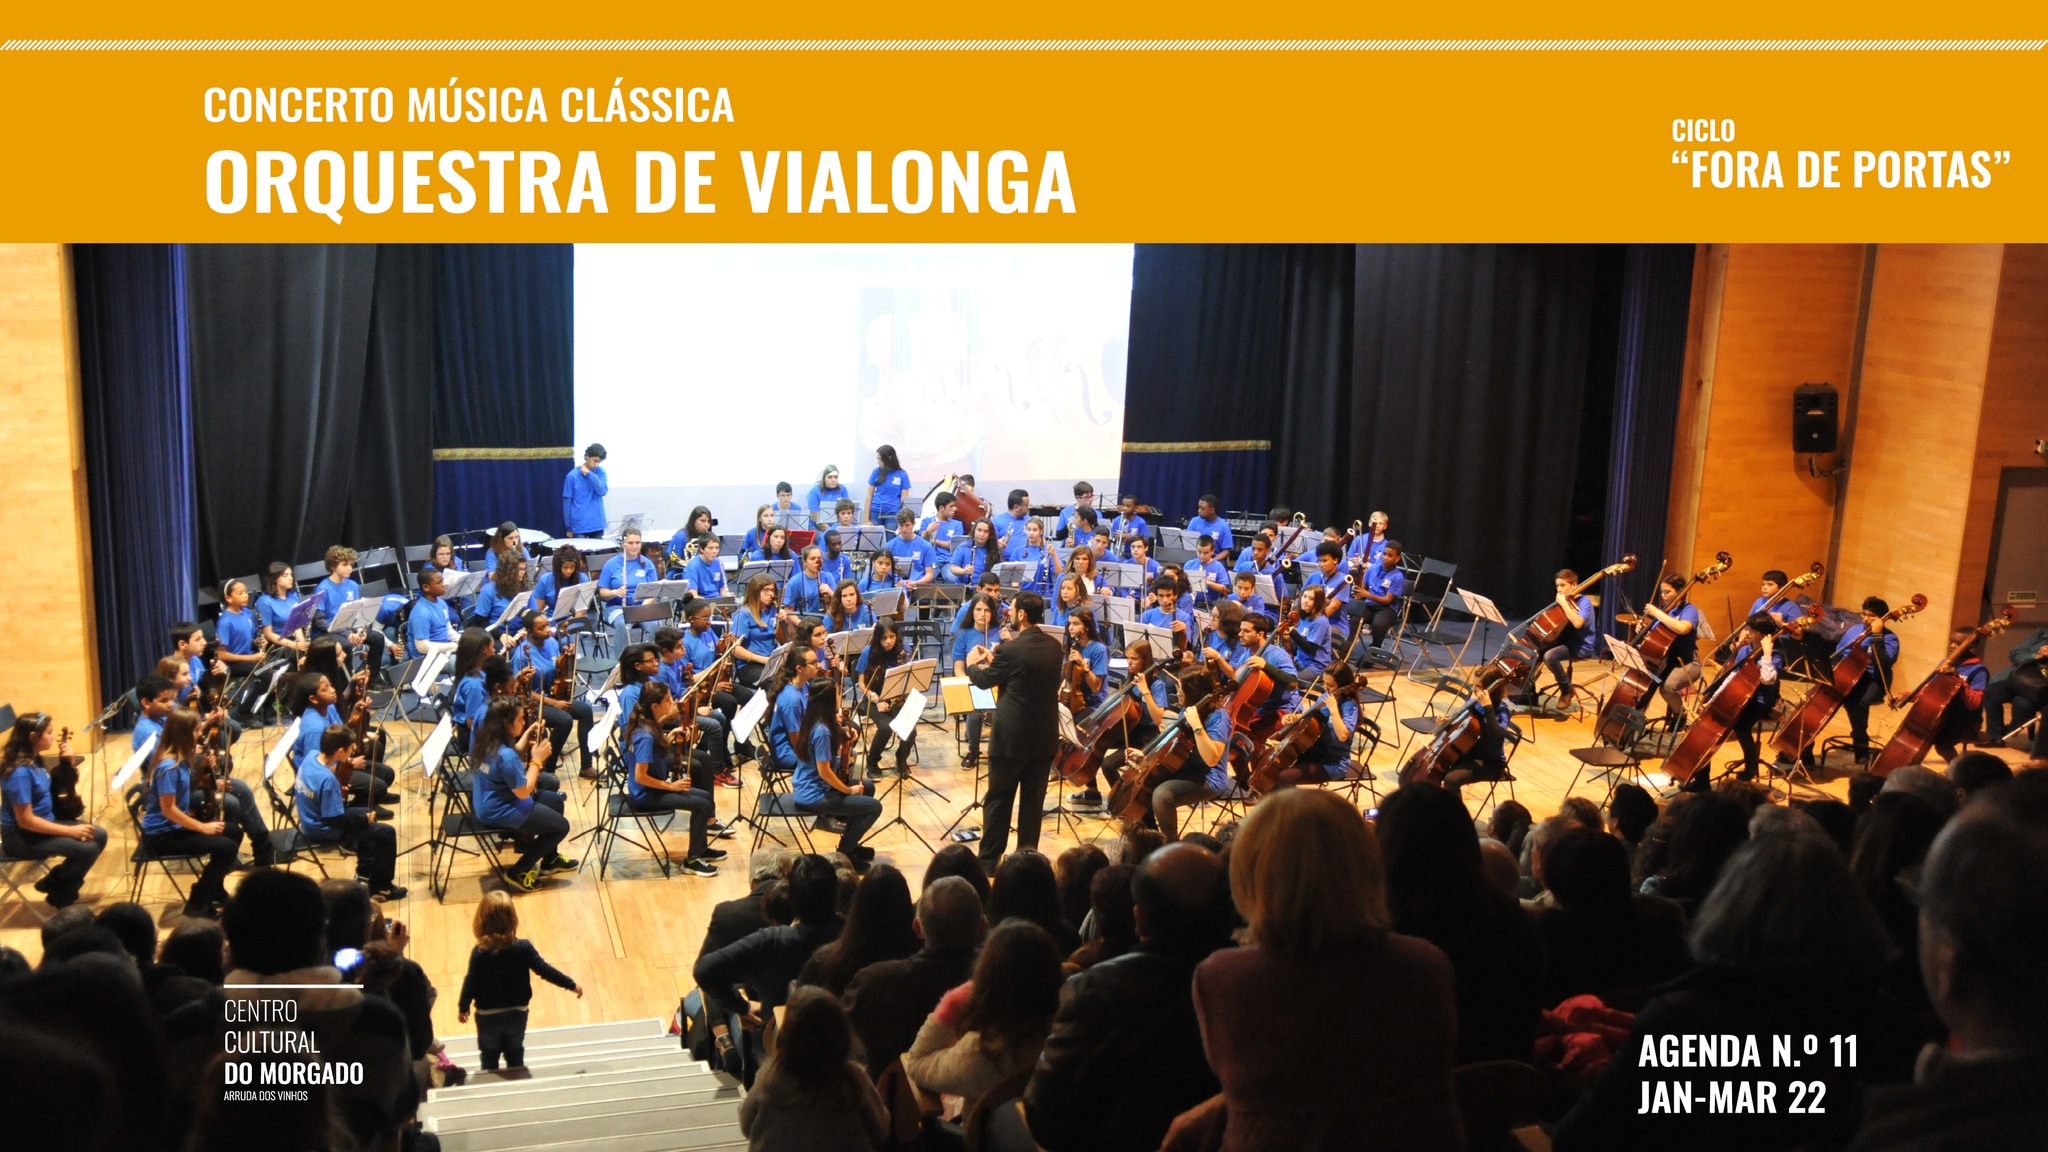 Concerto Música Clássica  Orquestra de Vialonga